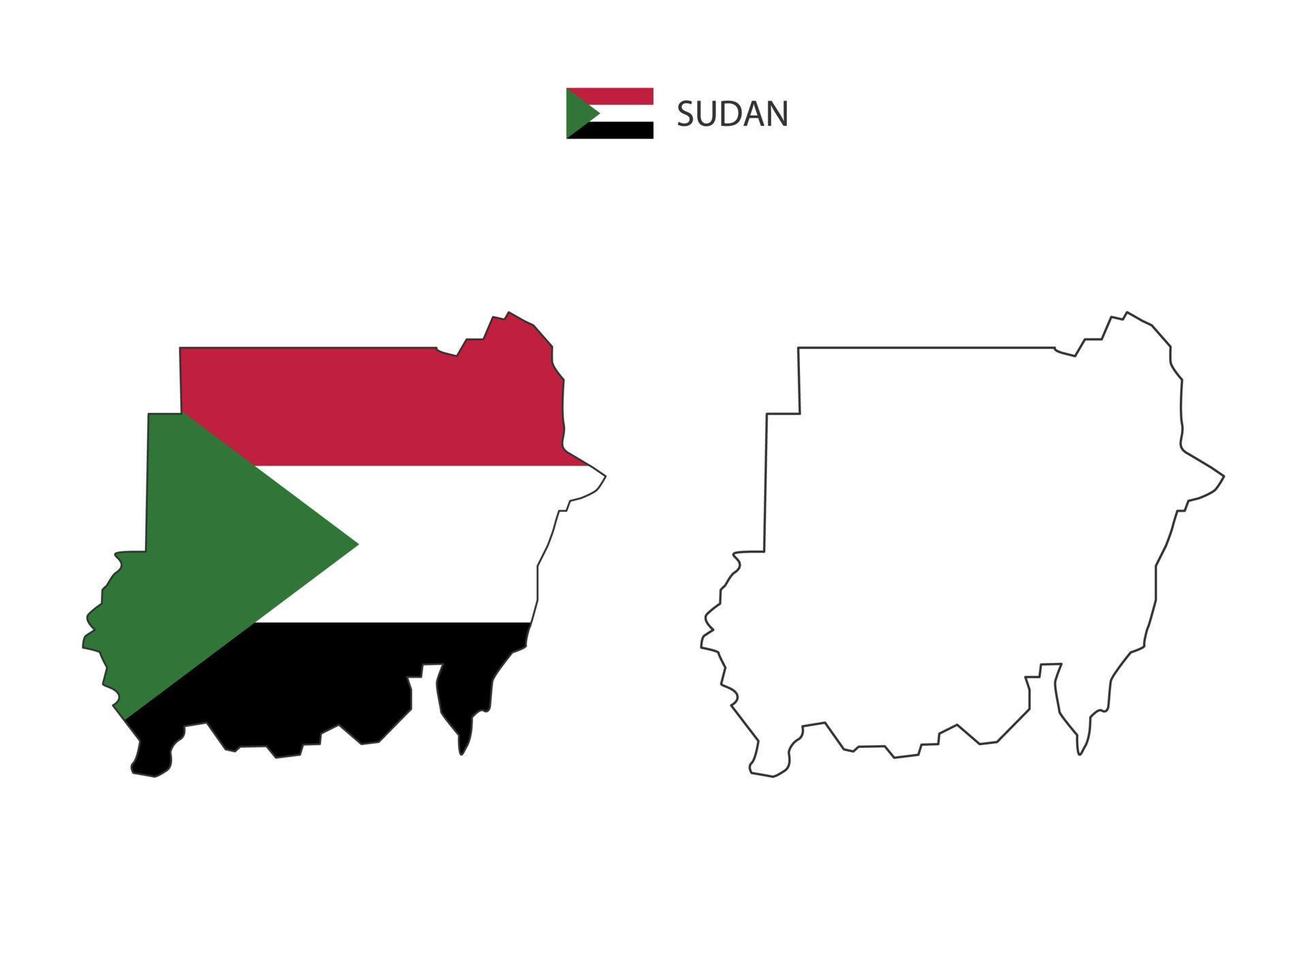 Soedan kaart stad vector verdeeld door schets eenvoud stijl. hebben 2 versies, zwart dun lijn versie en kleur van land vlag versie. beide kaart waren Aan de wit achtergrond.